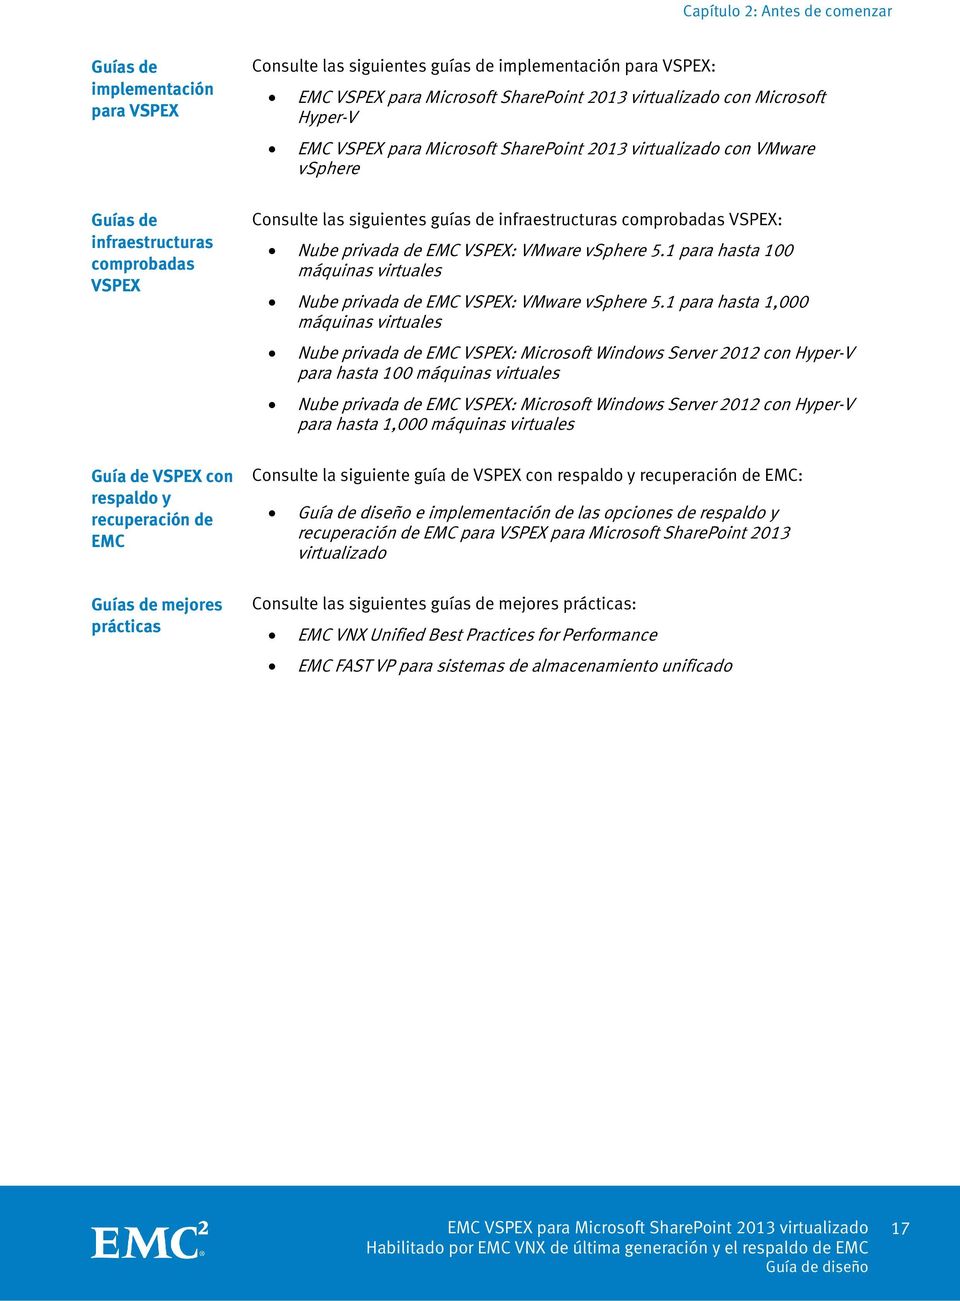 5.1 para hasta 100 máquinas virtuales Nube privada de EMC VSPEX: VMware vsphere 5.